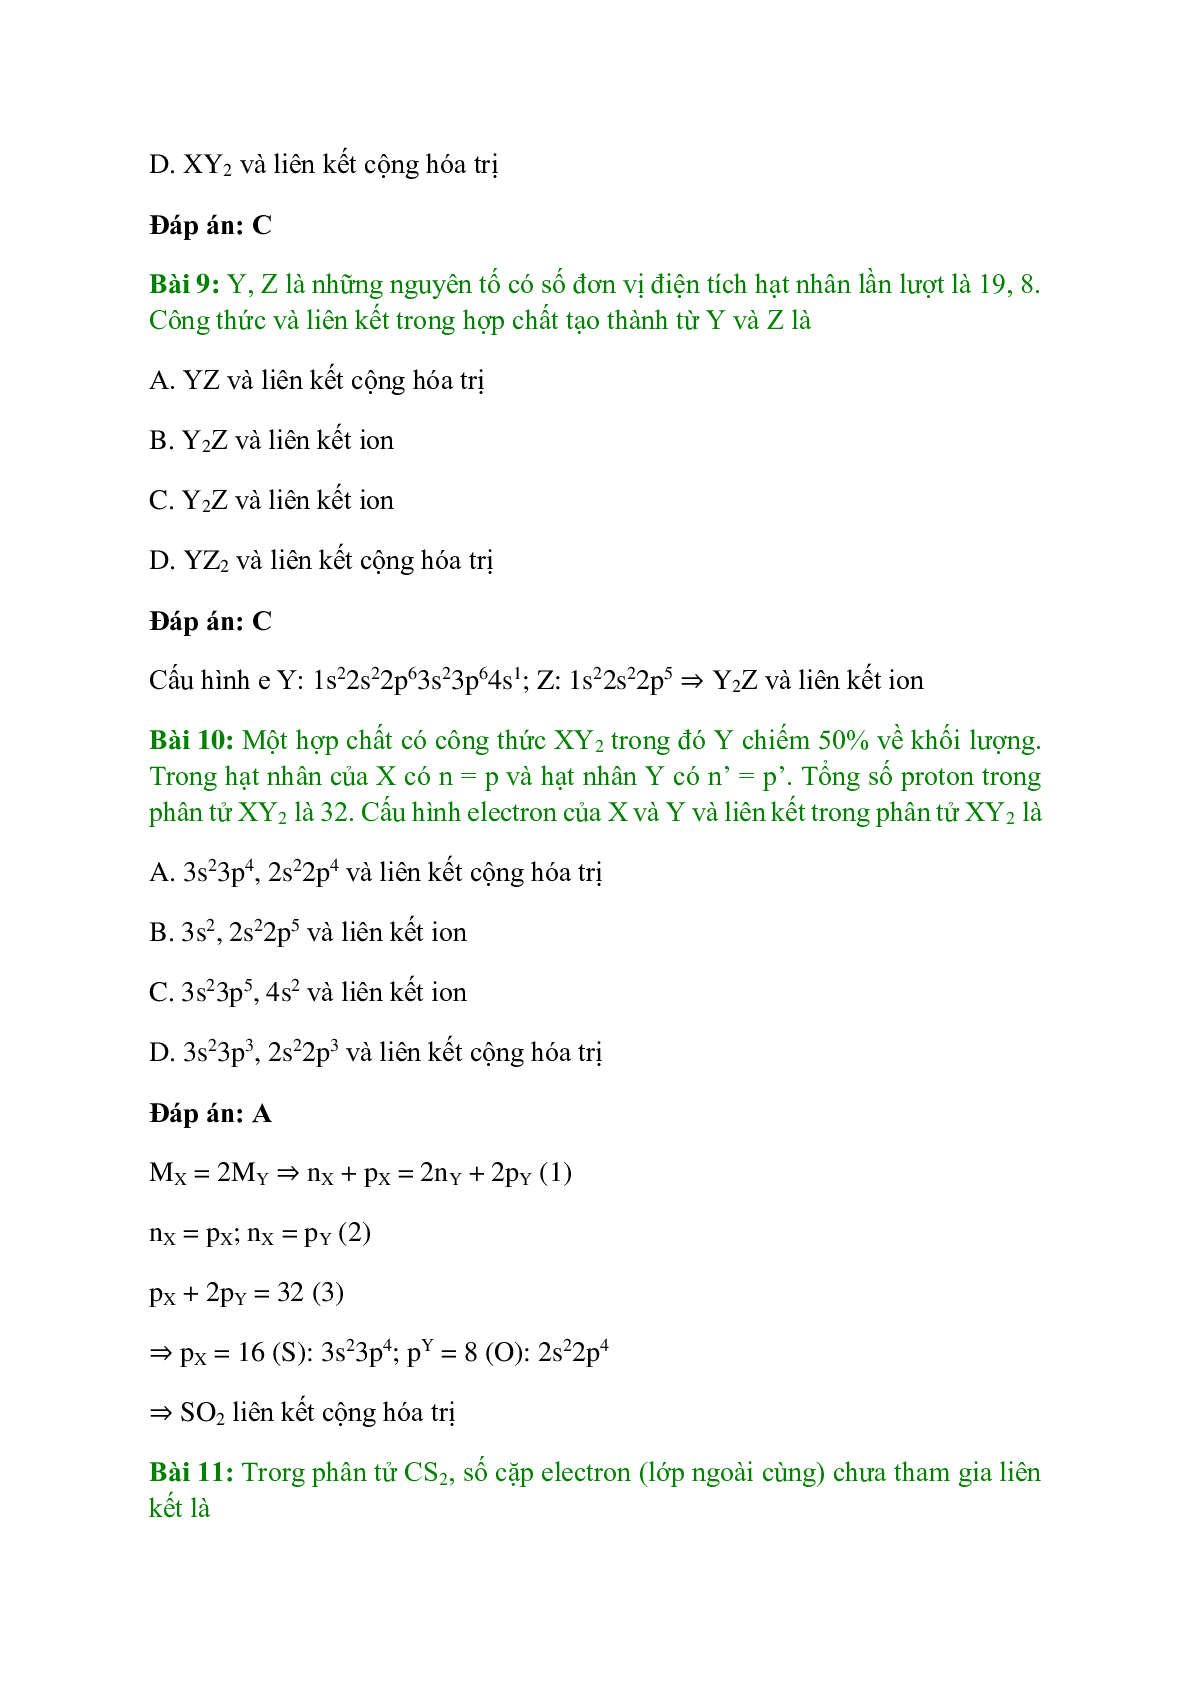 Trắc nghiệm Luyện tập: Liên kết hóa học có đáp án - Hóa học 10 (trang 4)